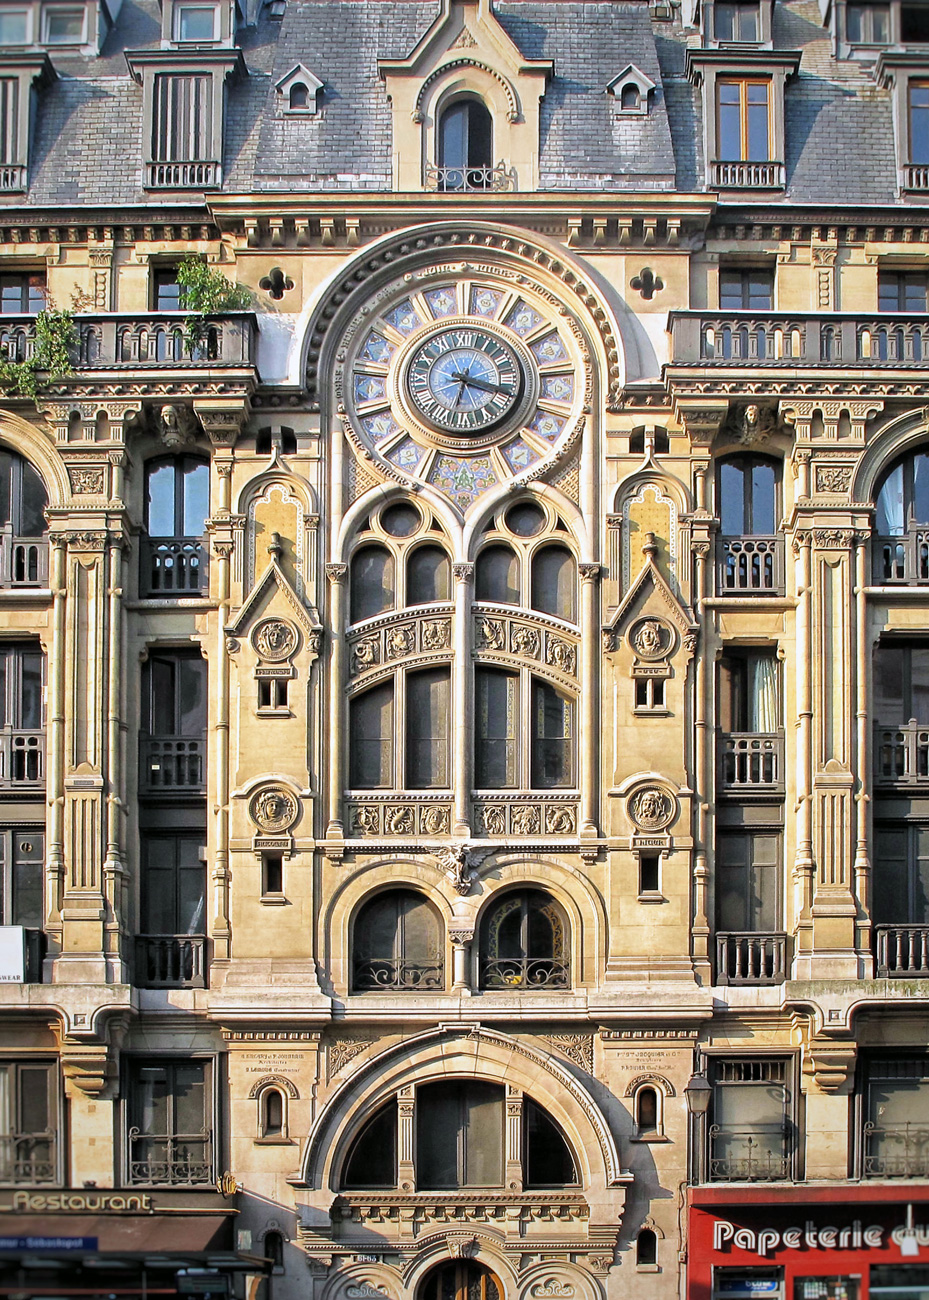 La façade insolite de l'immeuble du 61 rue Réaumur Sebastopol, avec un horloge ronde